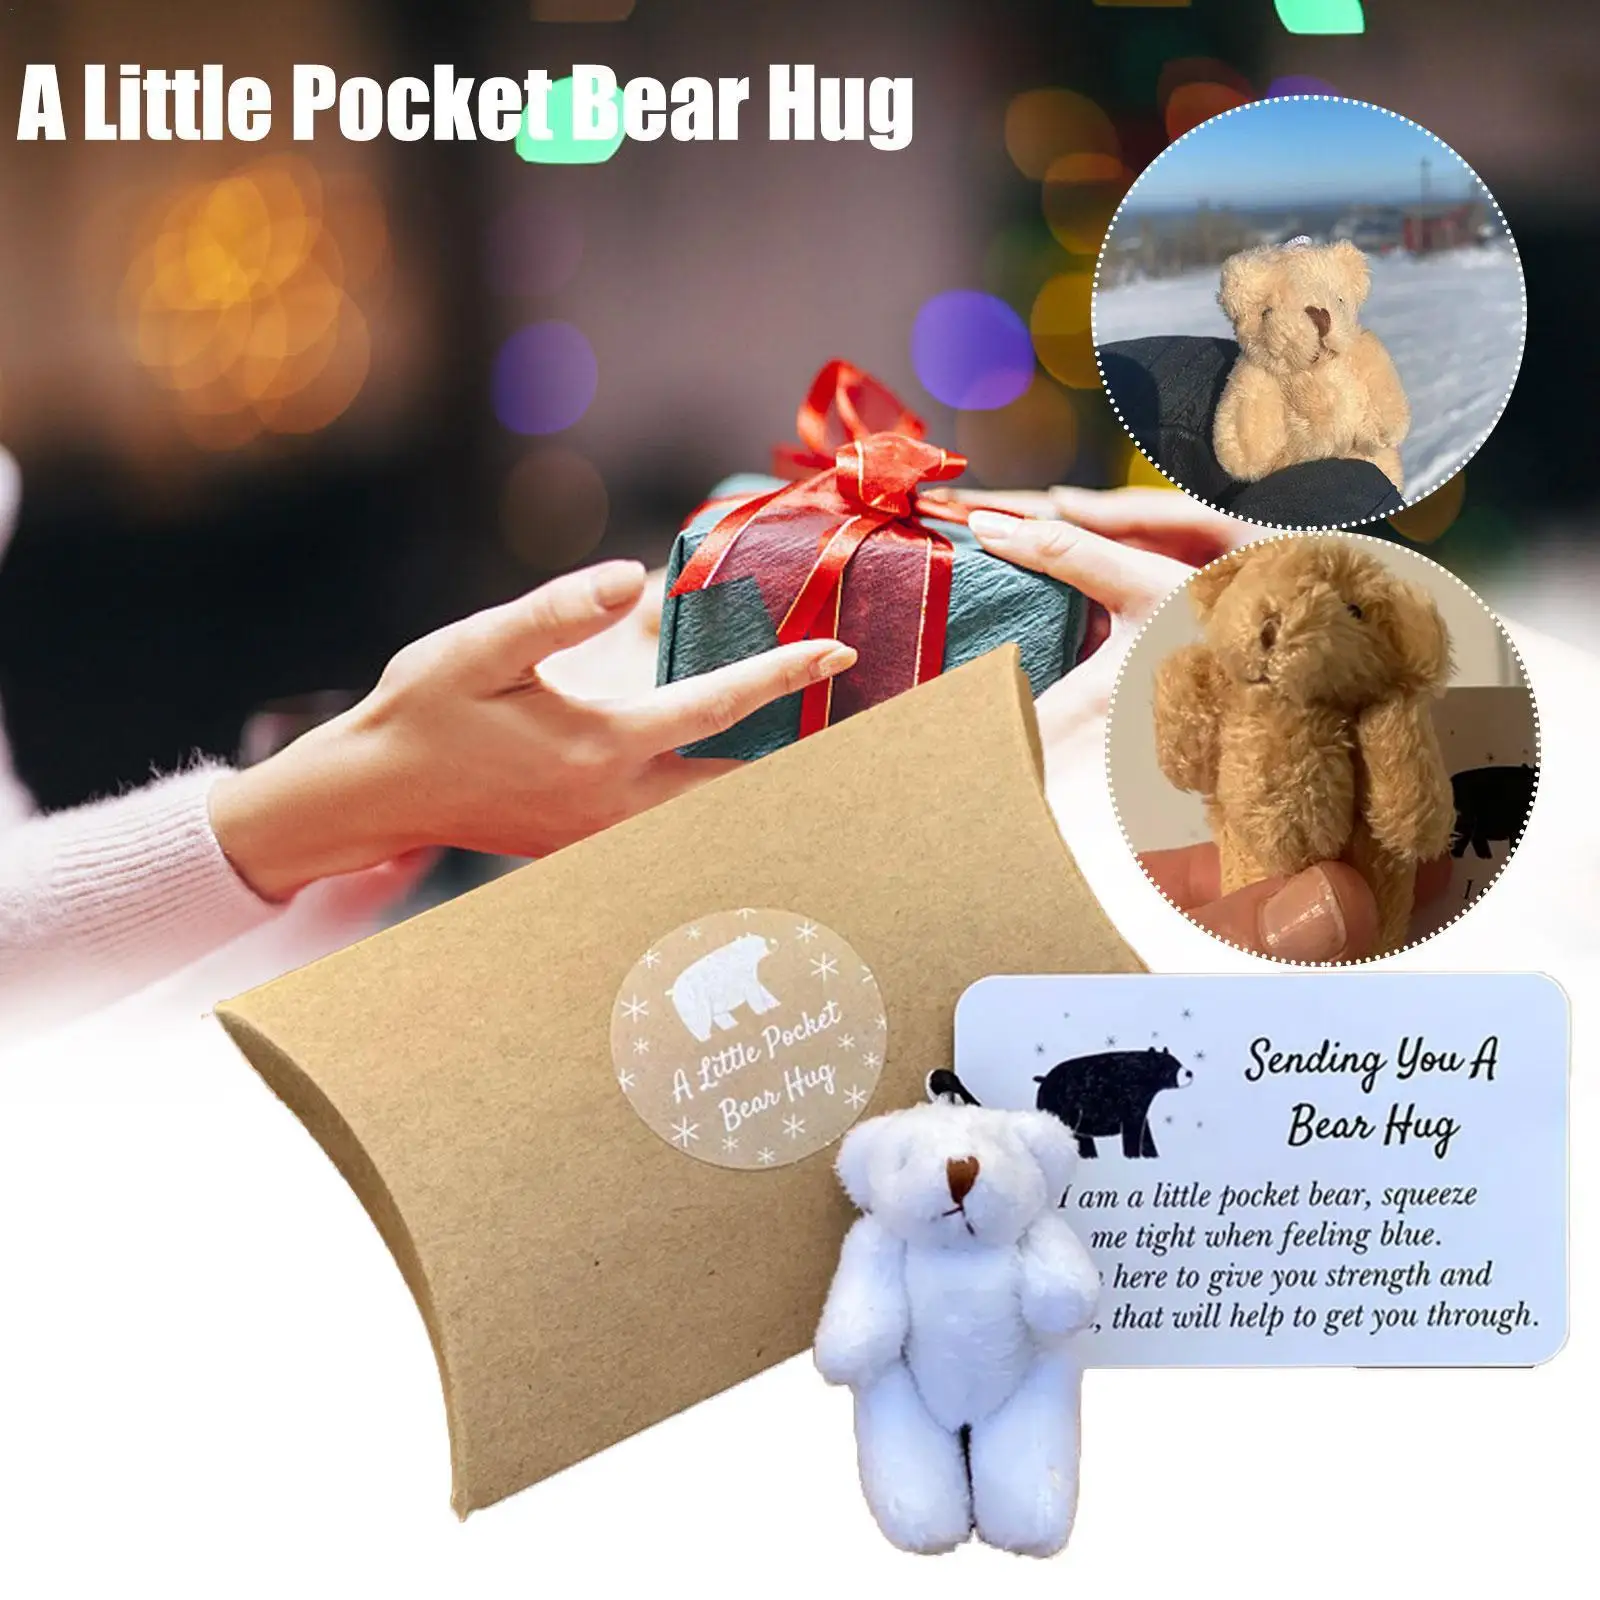 

Маленький карманный медведь для обнимания, маленькие медведи, плюшевые мягкие игрушки, милый подарок с маленькой карточкой для сообщений, д...